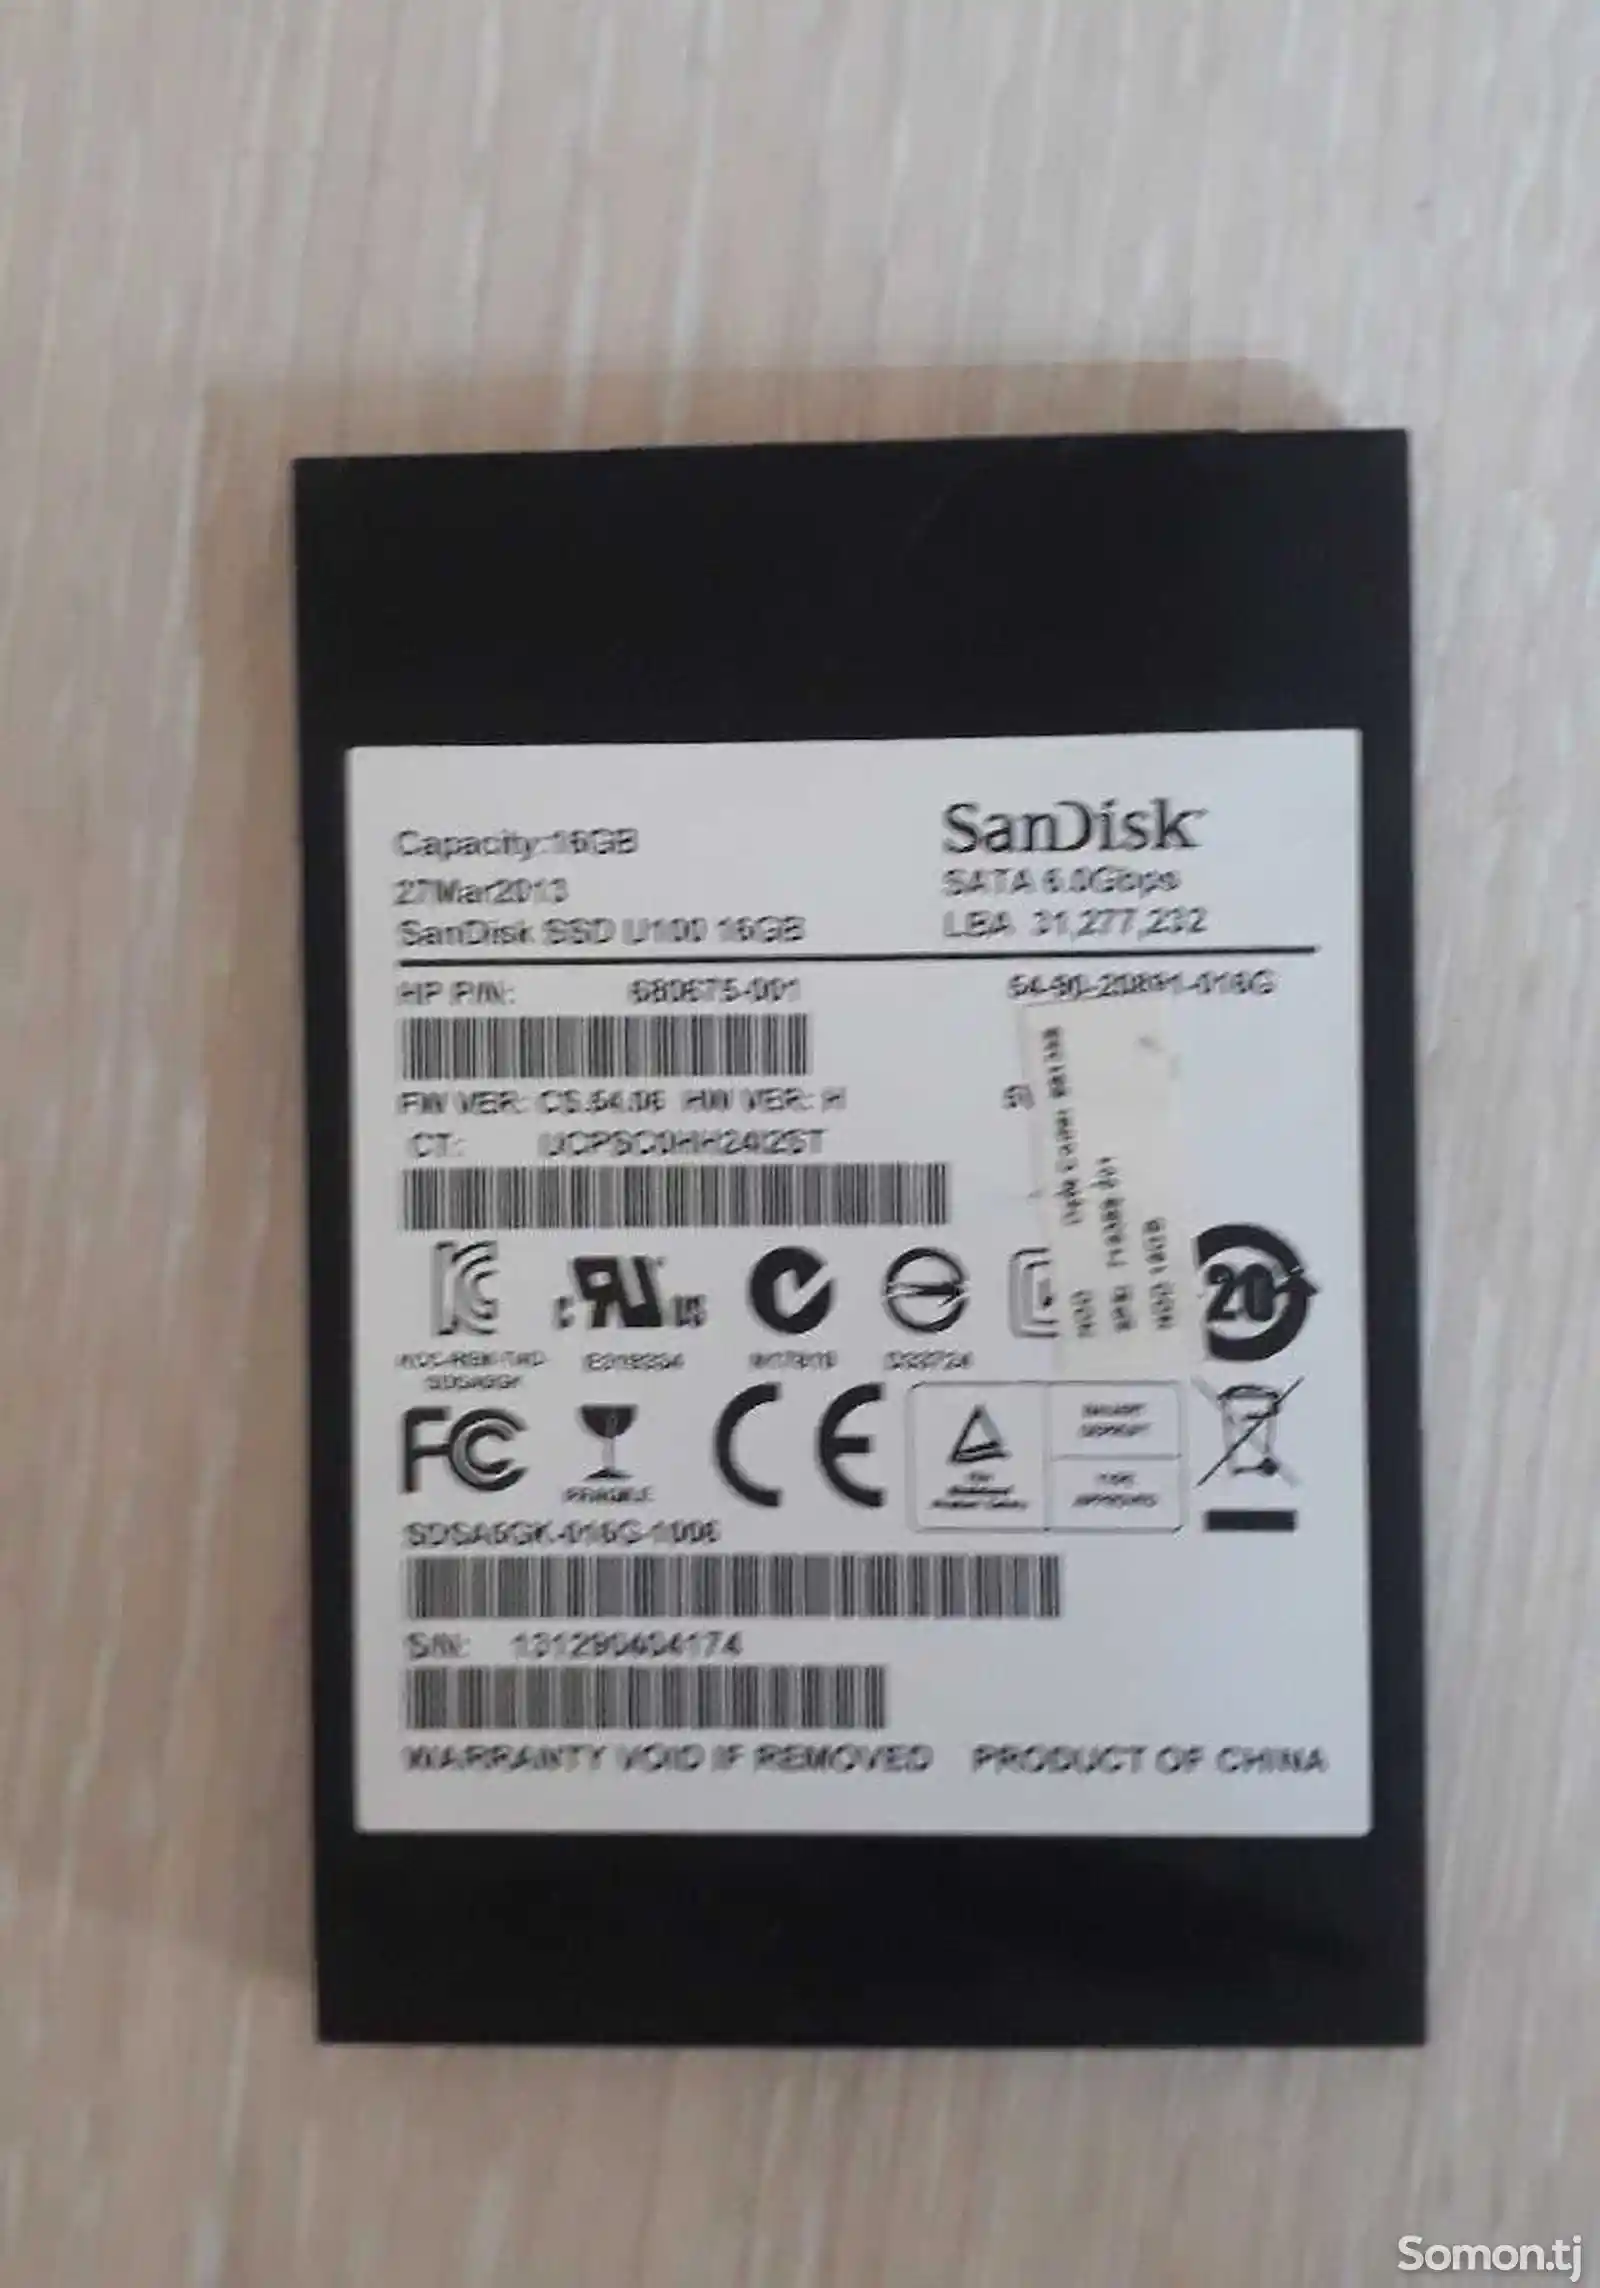 SanDisk SSD 16GB